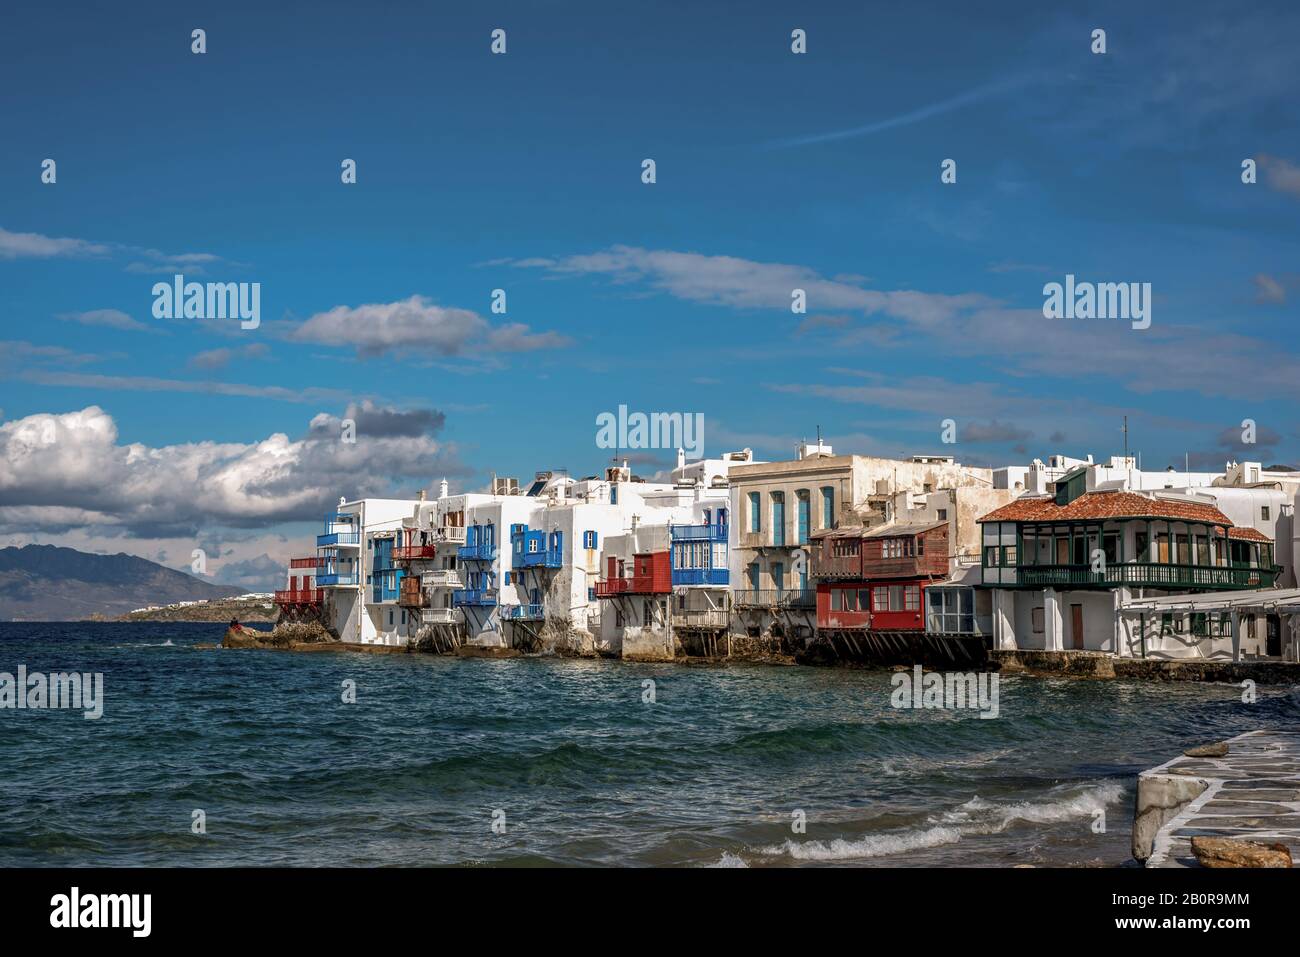 Petite baie de Venise de la ville de Mykonos sur l'île de Mykonos en Grèce Banque D'Images